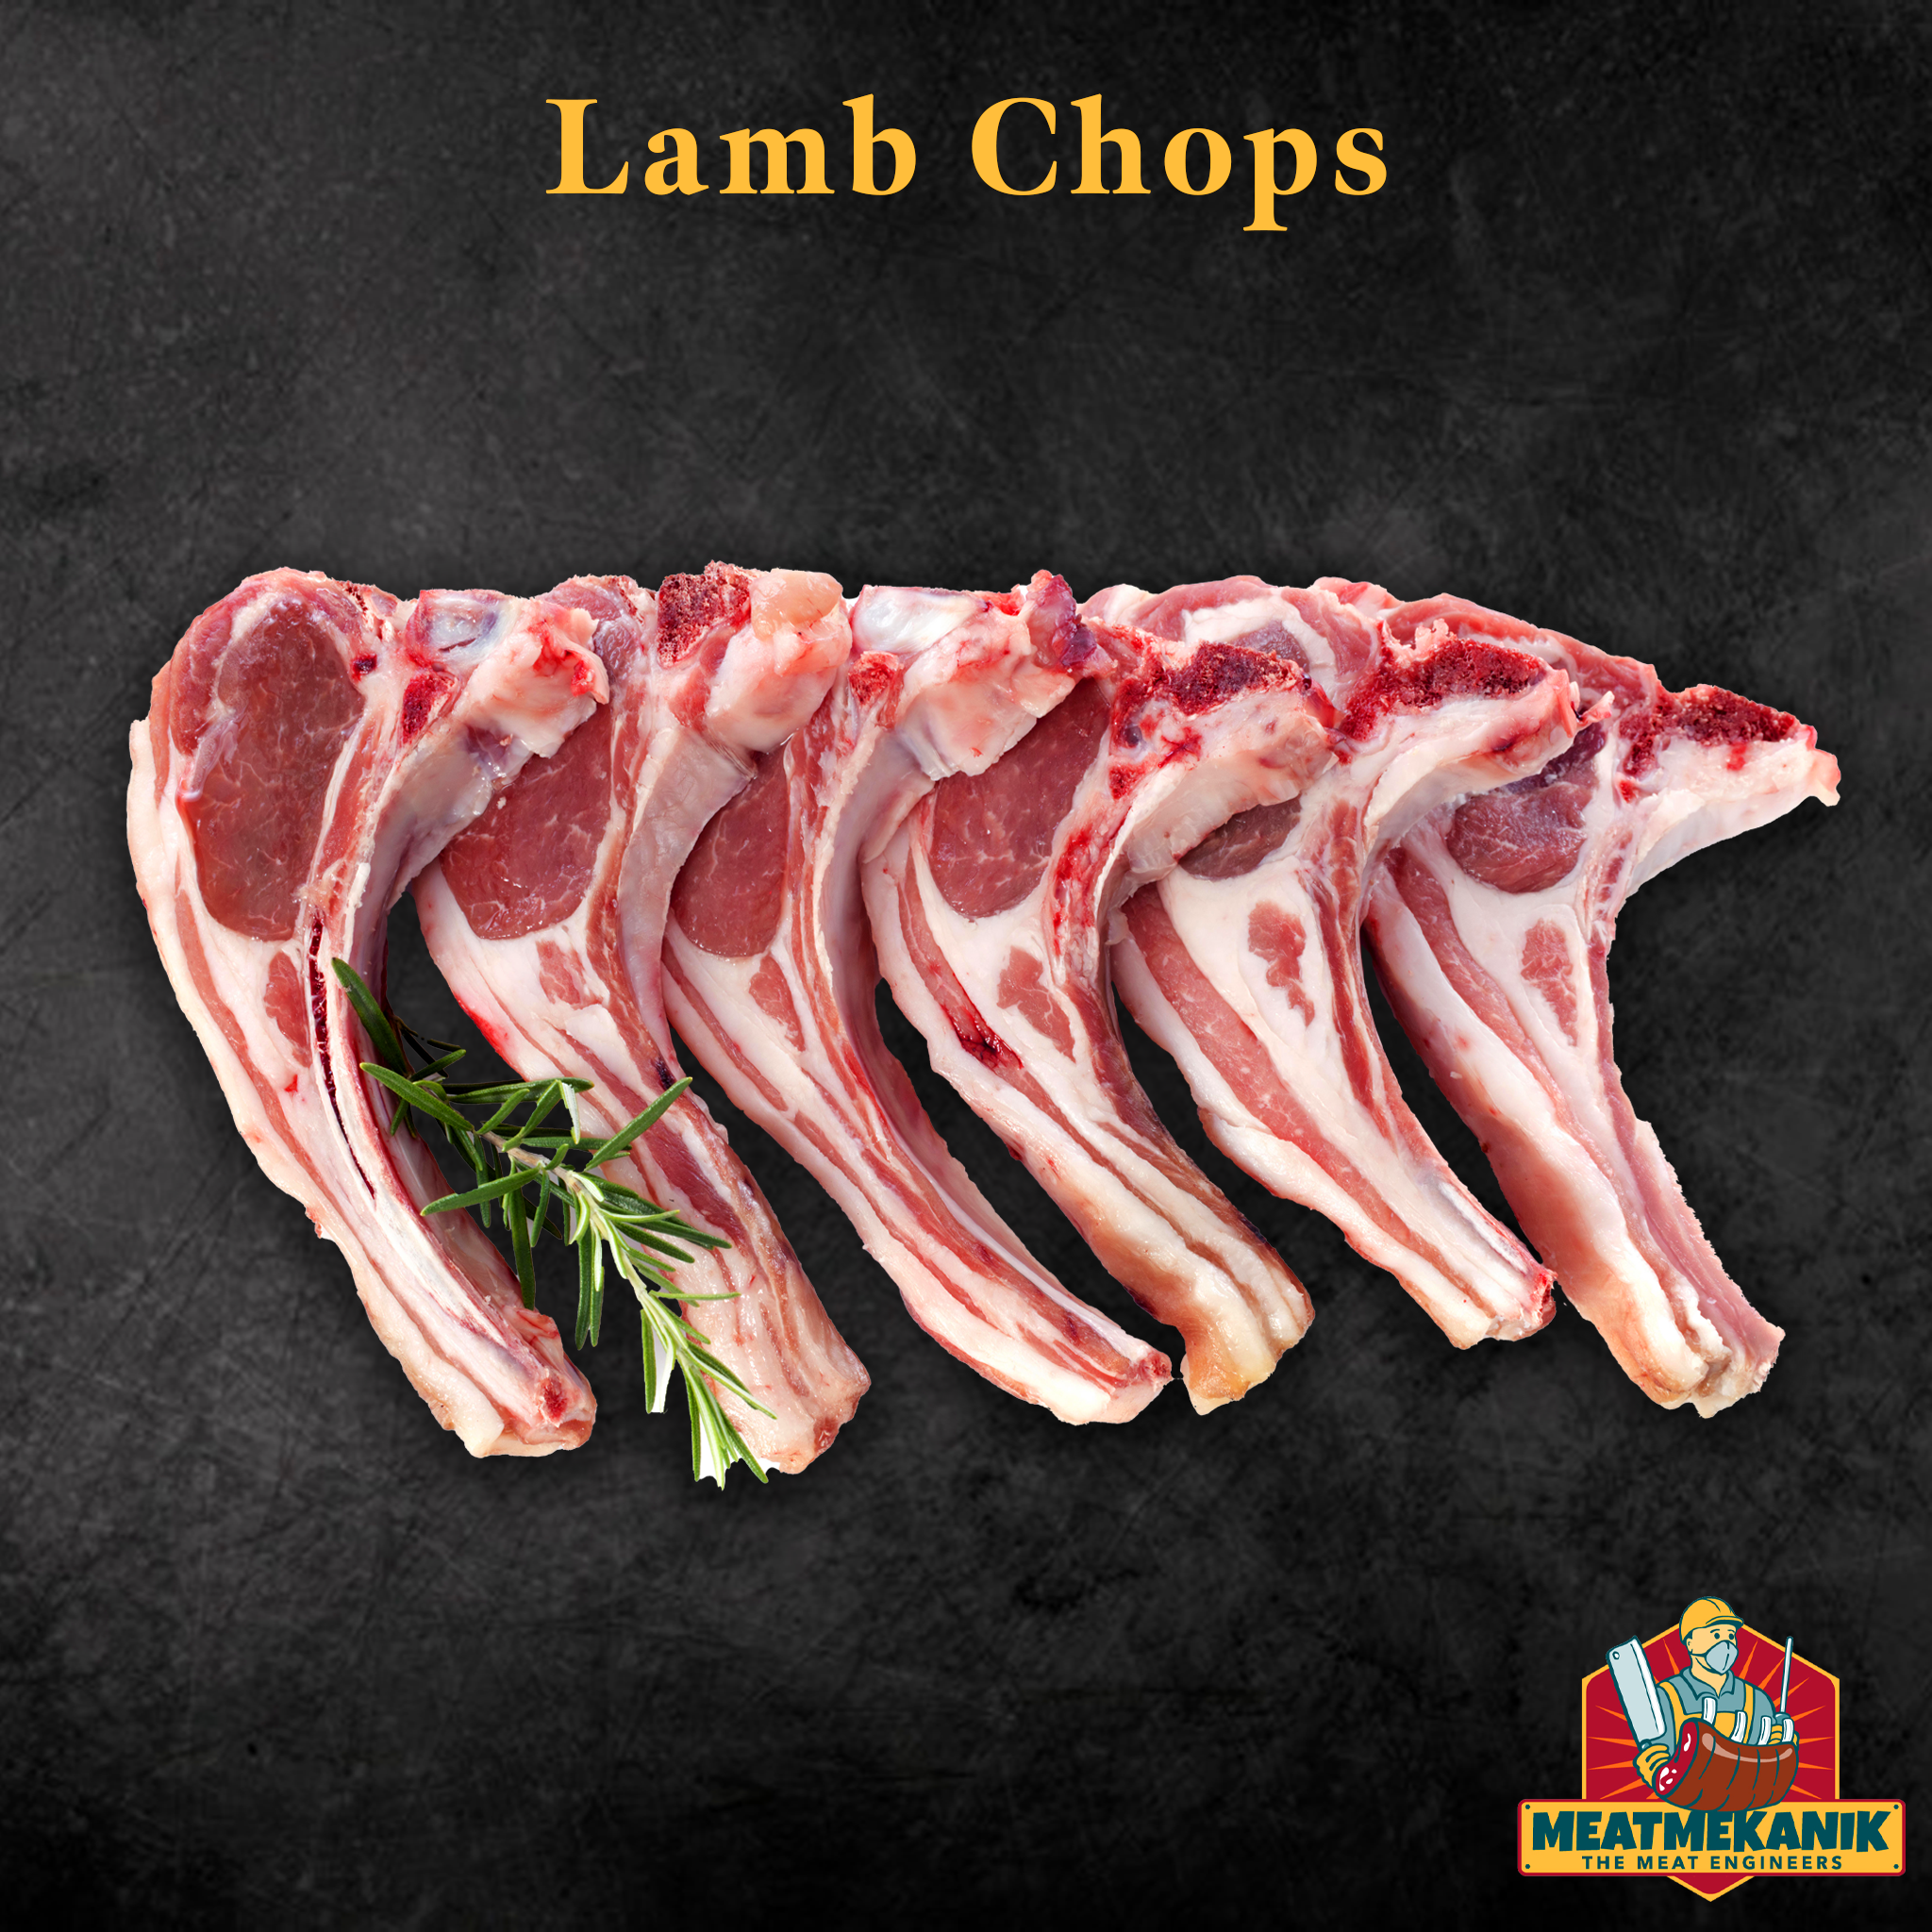 Lamb Chops - Meat Mekanik